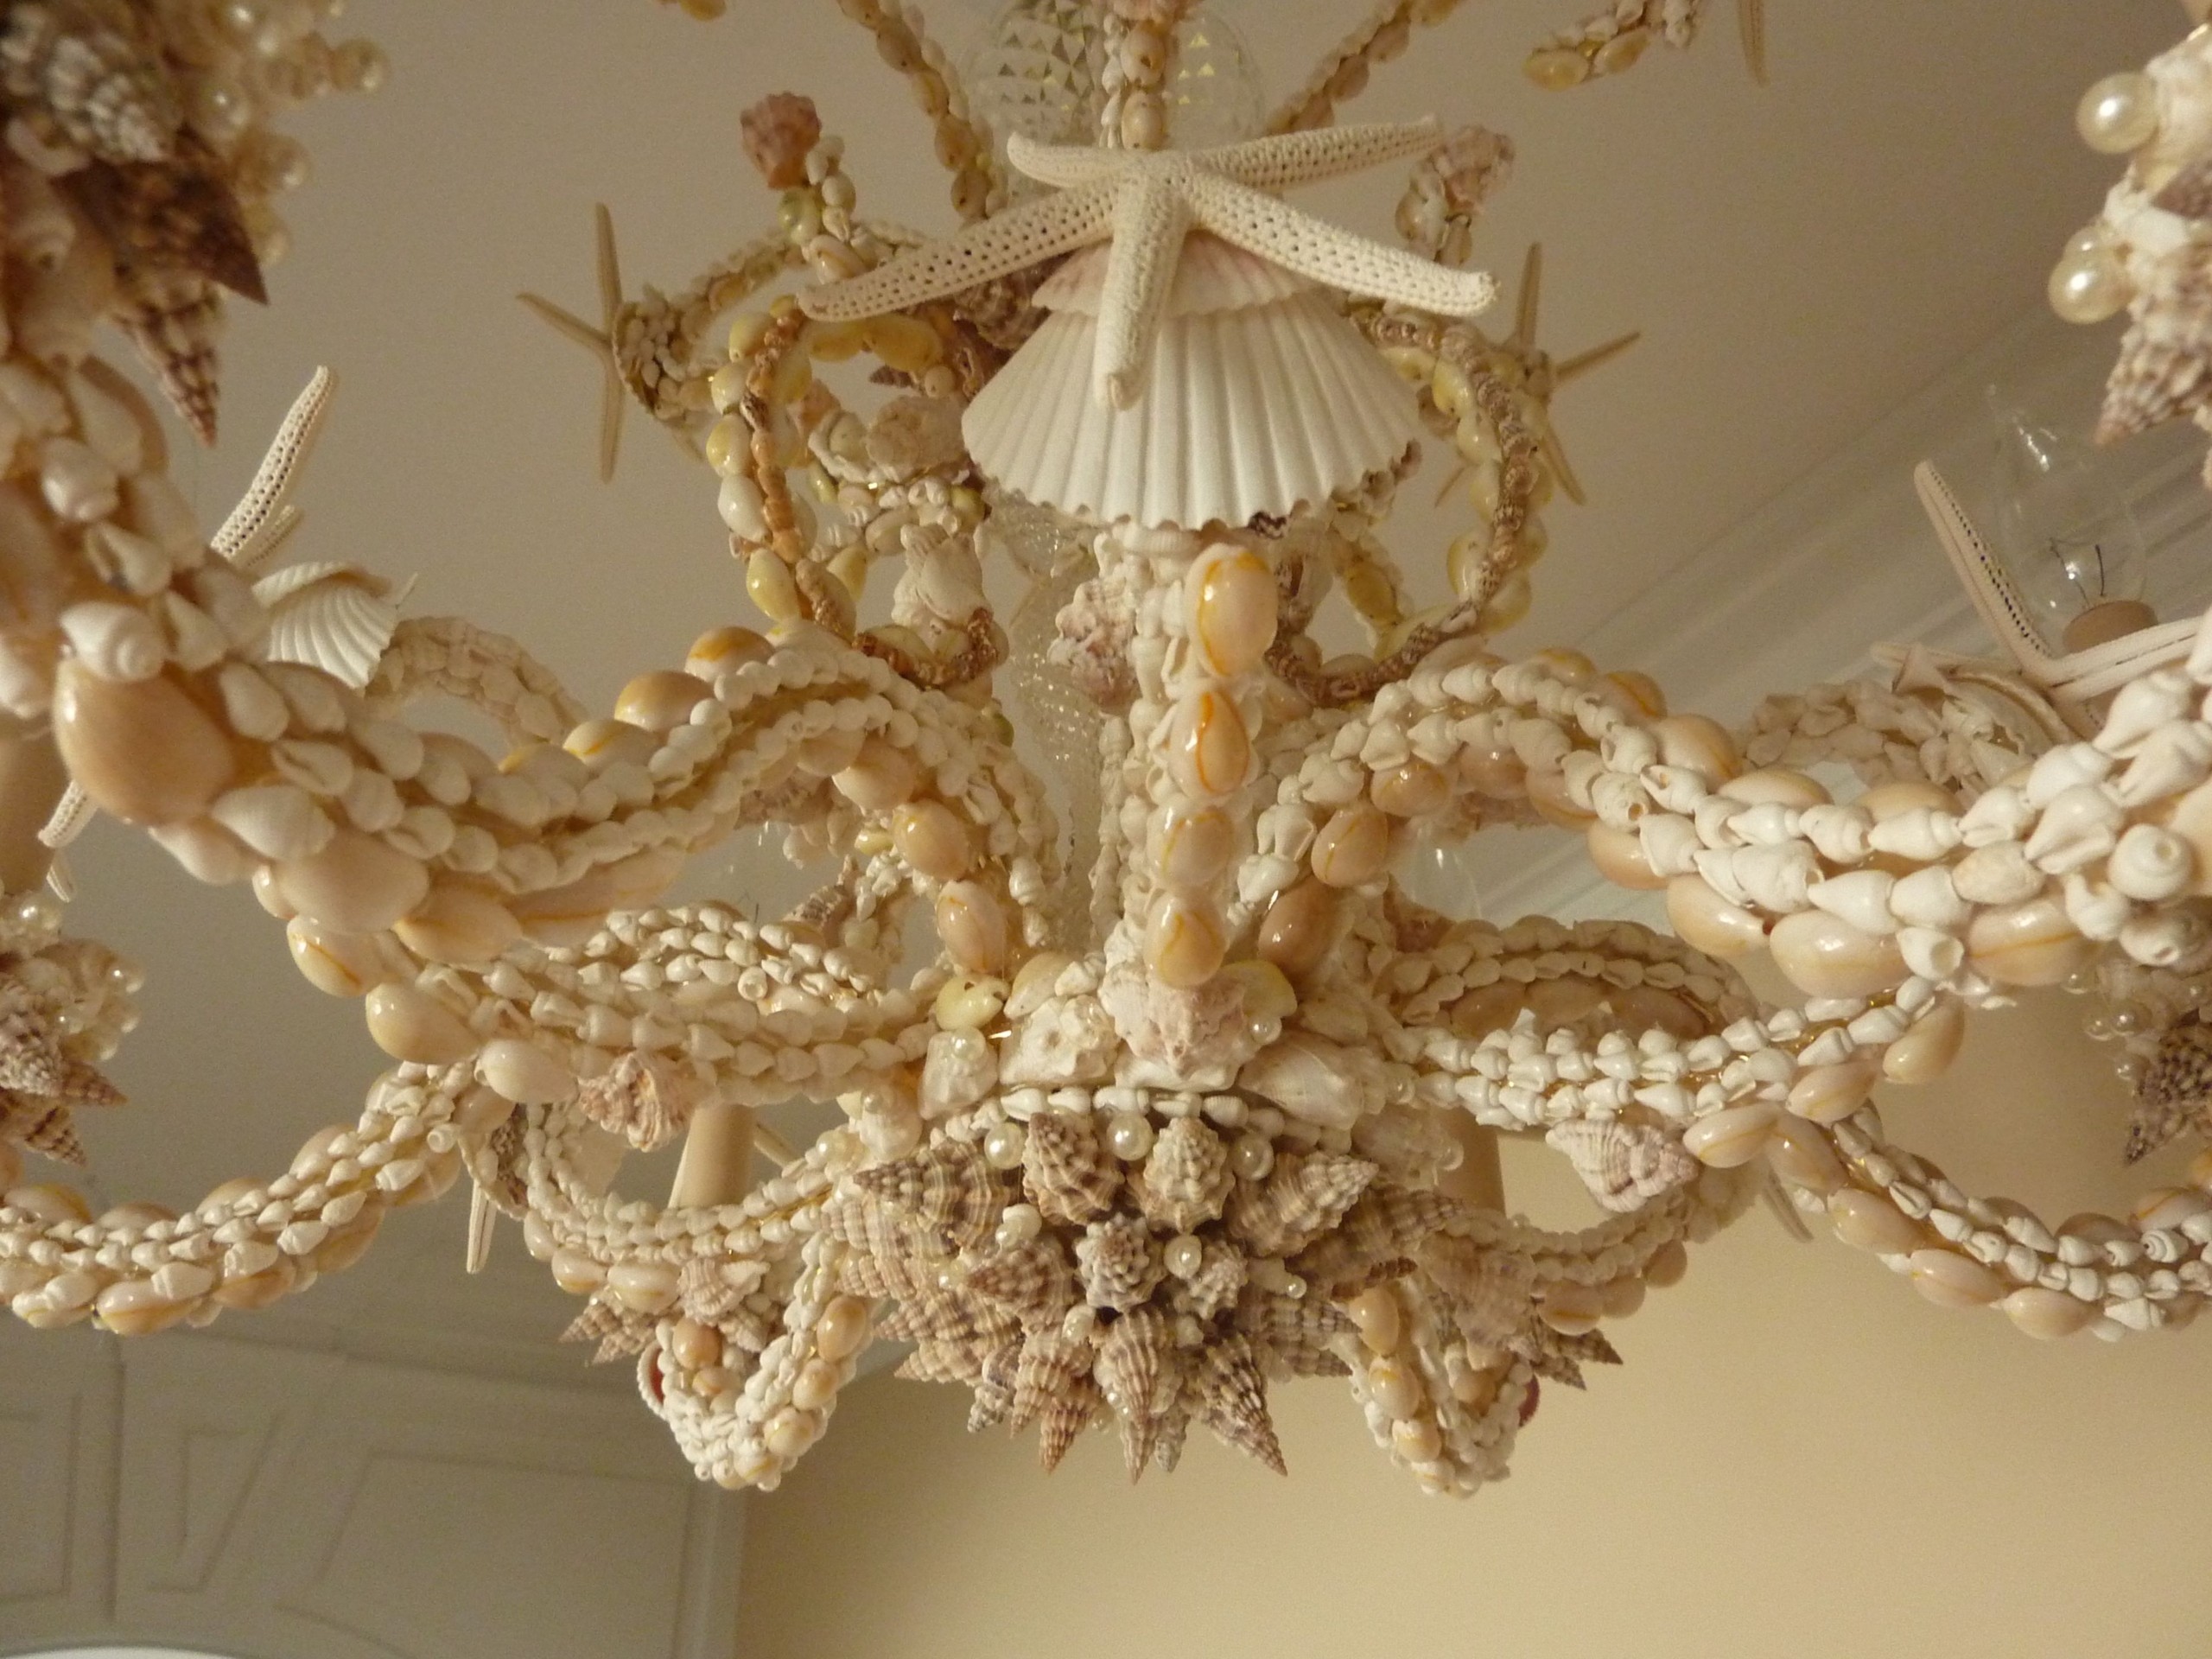 Sarahs seashell chandelier i love shelling